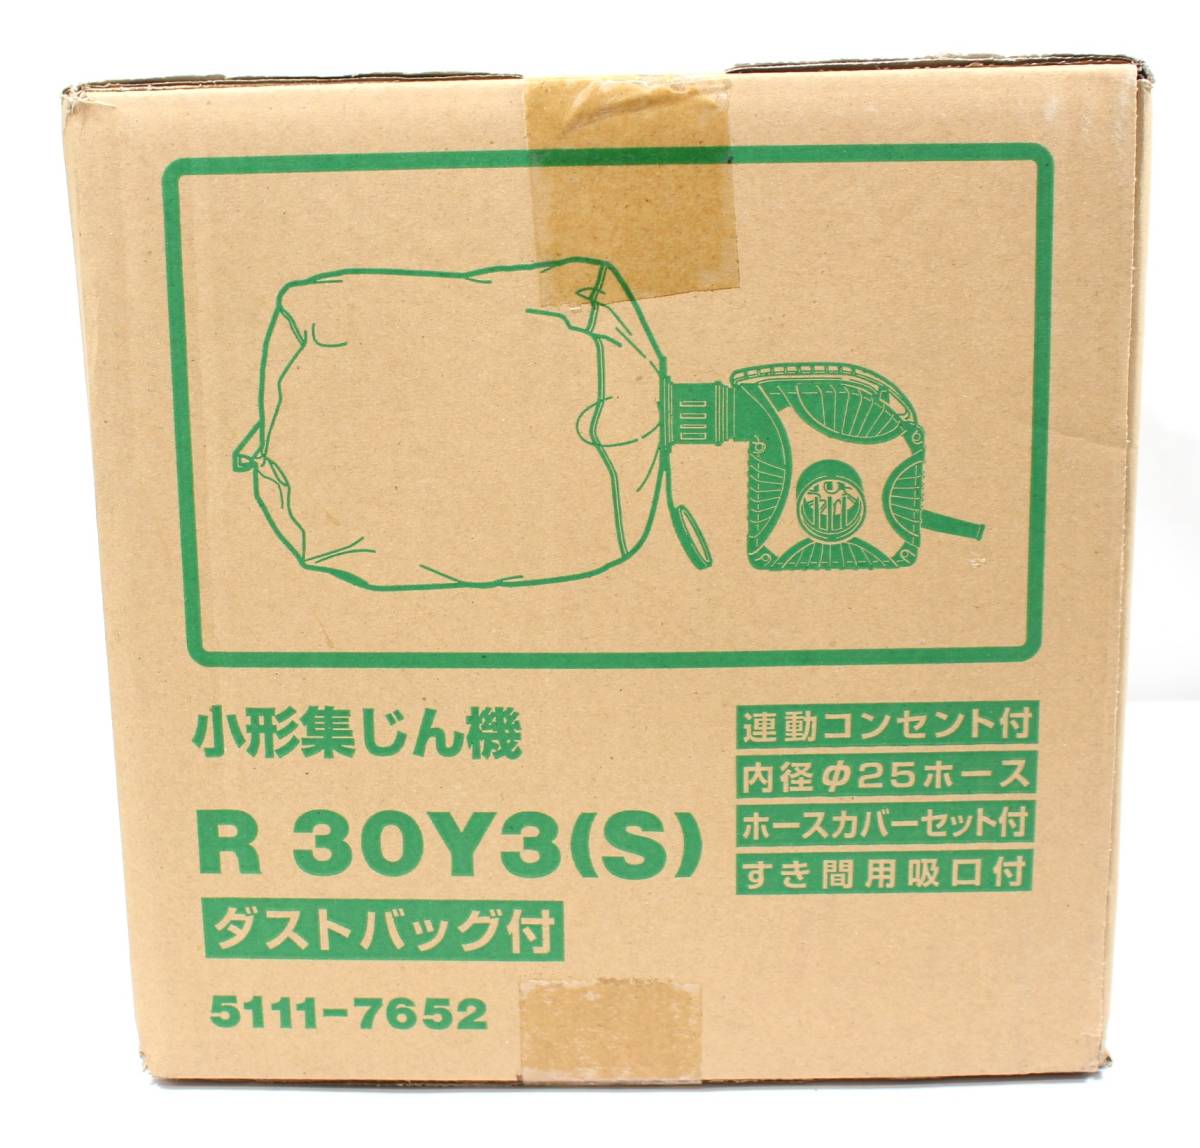 Y5679#* не использовался / нераспечатанный товар *HiKOKI высокий ko-ki маленький форма сборник .. машина R 30Y3(S) пыль сумка есть 